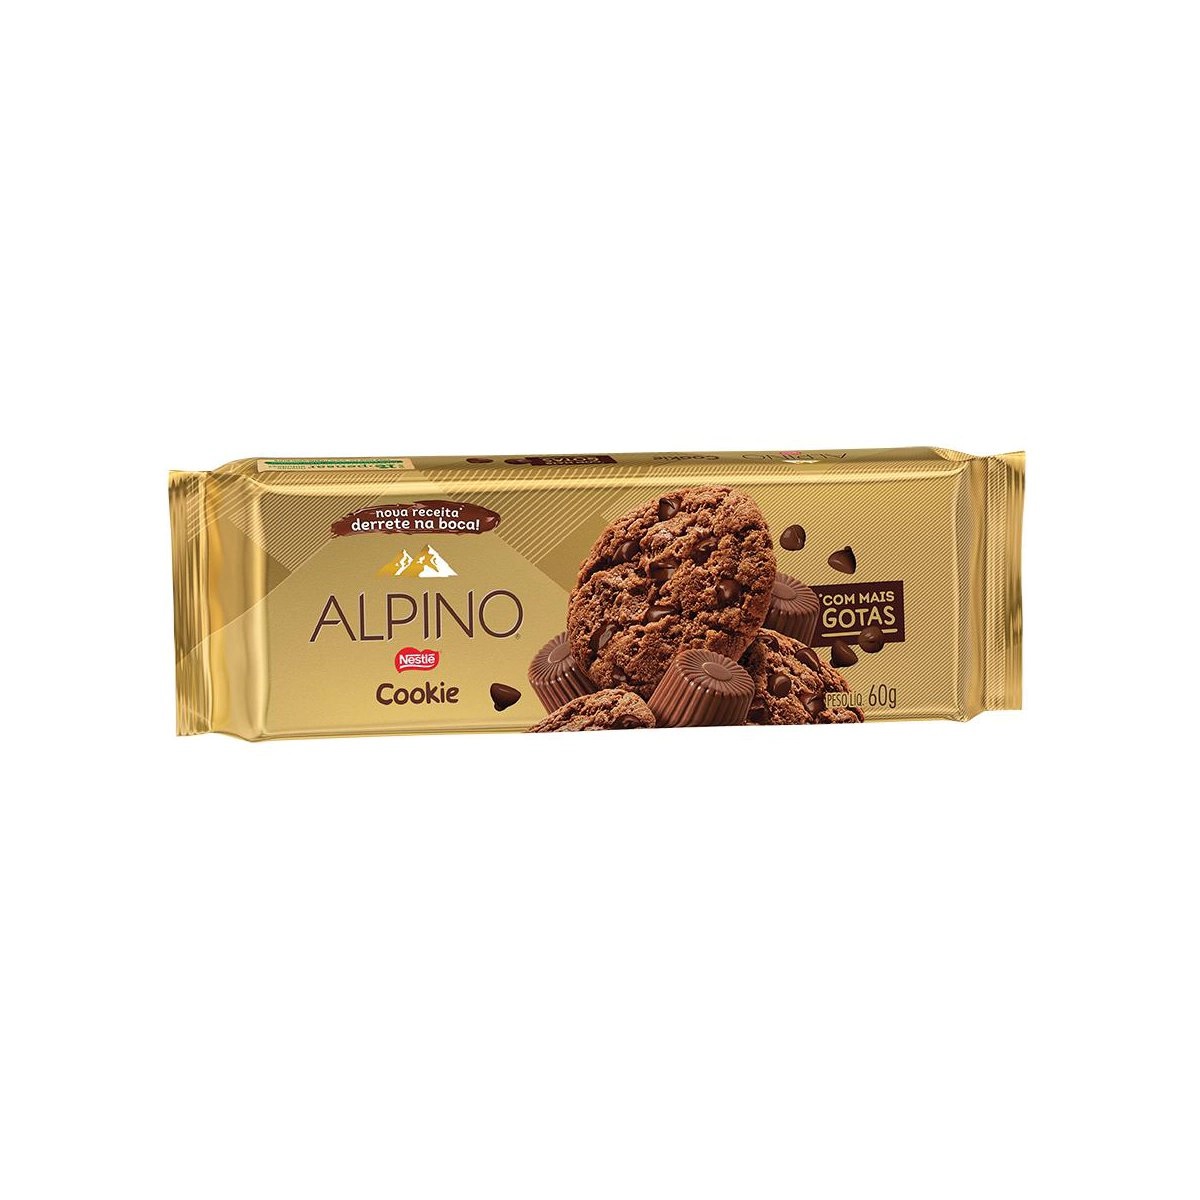 Cookies Alpino Nestlé 60g - 3 pacotes de 20g cada